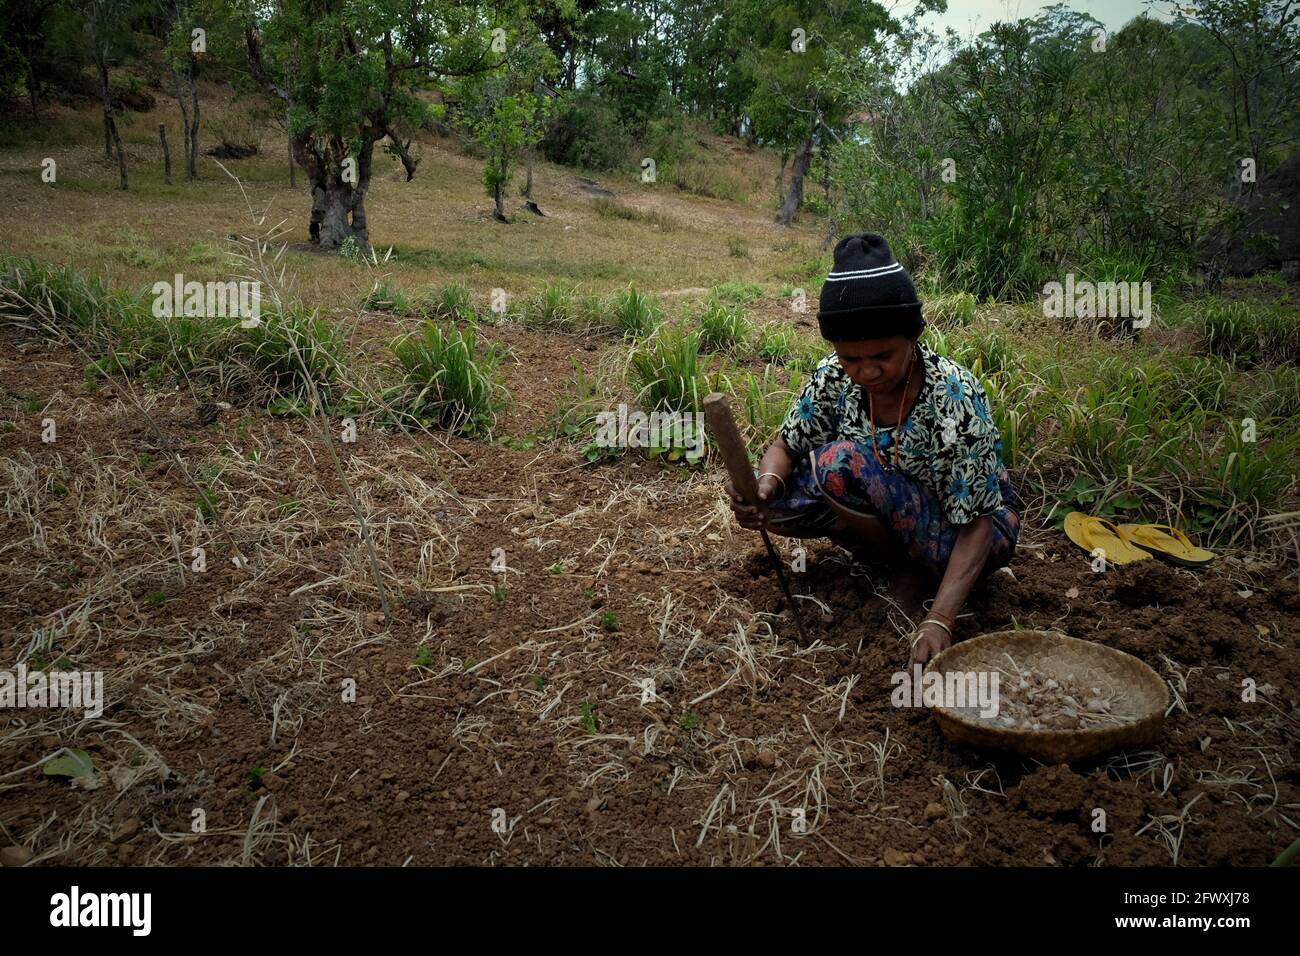 Yuliana Fuka arbeitet auf ihrem trockenen Ackerland im Dorf Fatumnasi, Süd-Zentral-Timor, Ost-Nusa Tenggara, Indonesien. Die Landwirte bewirtschaften häufig die am stärksten von Dürre und anomalen Wetterereignissen gefährdeten Gebiete, so eine wissenschaftliche Bewertung aus dem Jahr 2021, die sich auf das Klimarisiko konzentriert und von der Weltbank-Gruppe und der Asiatischen Entwicklungsbank veröffentlicht wurde. Zudem seien ärmere Landwirte und Gemeinden am wenigsten in der Lage, sich lokale Wasserspeicher, Bewässerungsinfrastruktur und Technologien zur Anpassung an den Klimawandel zu leisten, hieß es im Bericht. Stockfoto